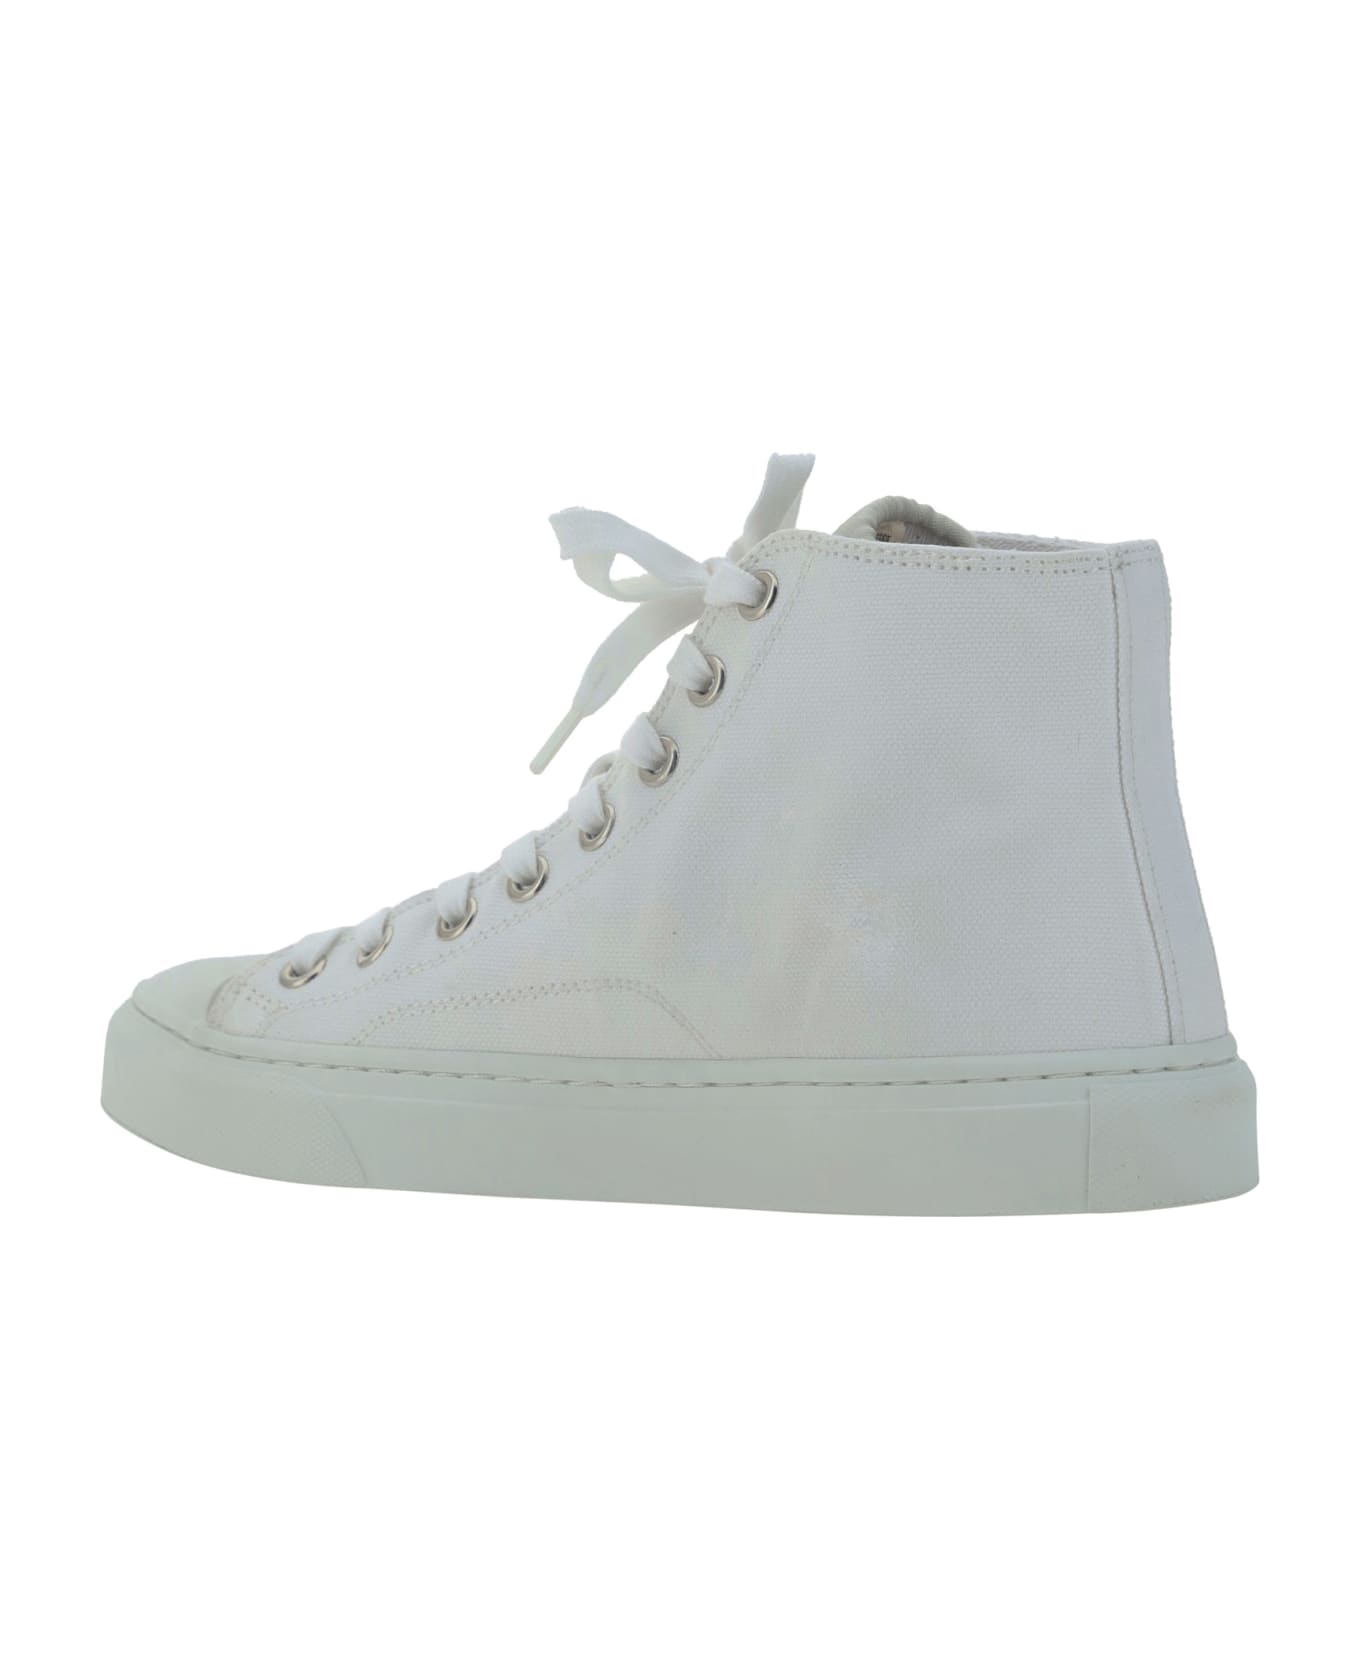 Vivienne Westwood Plimsoll Sneakers - White/black Orb スニーカー